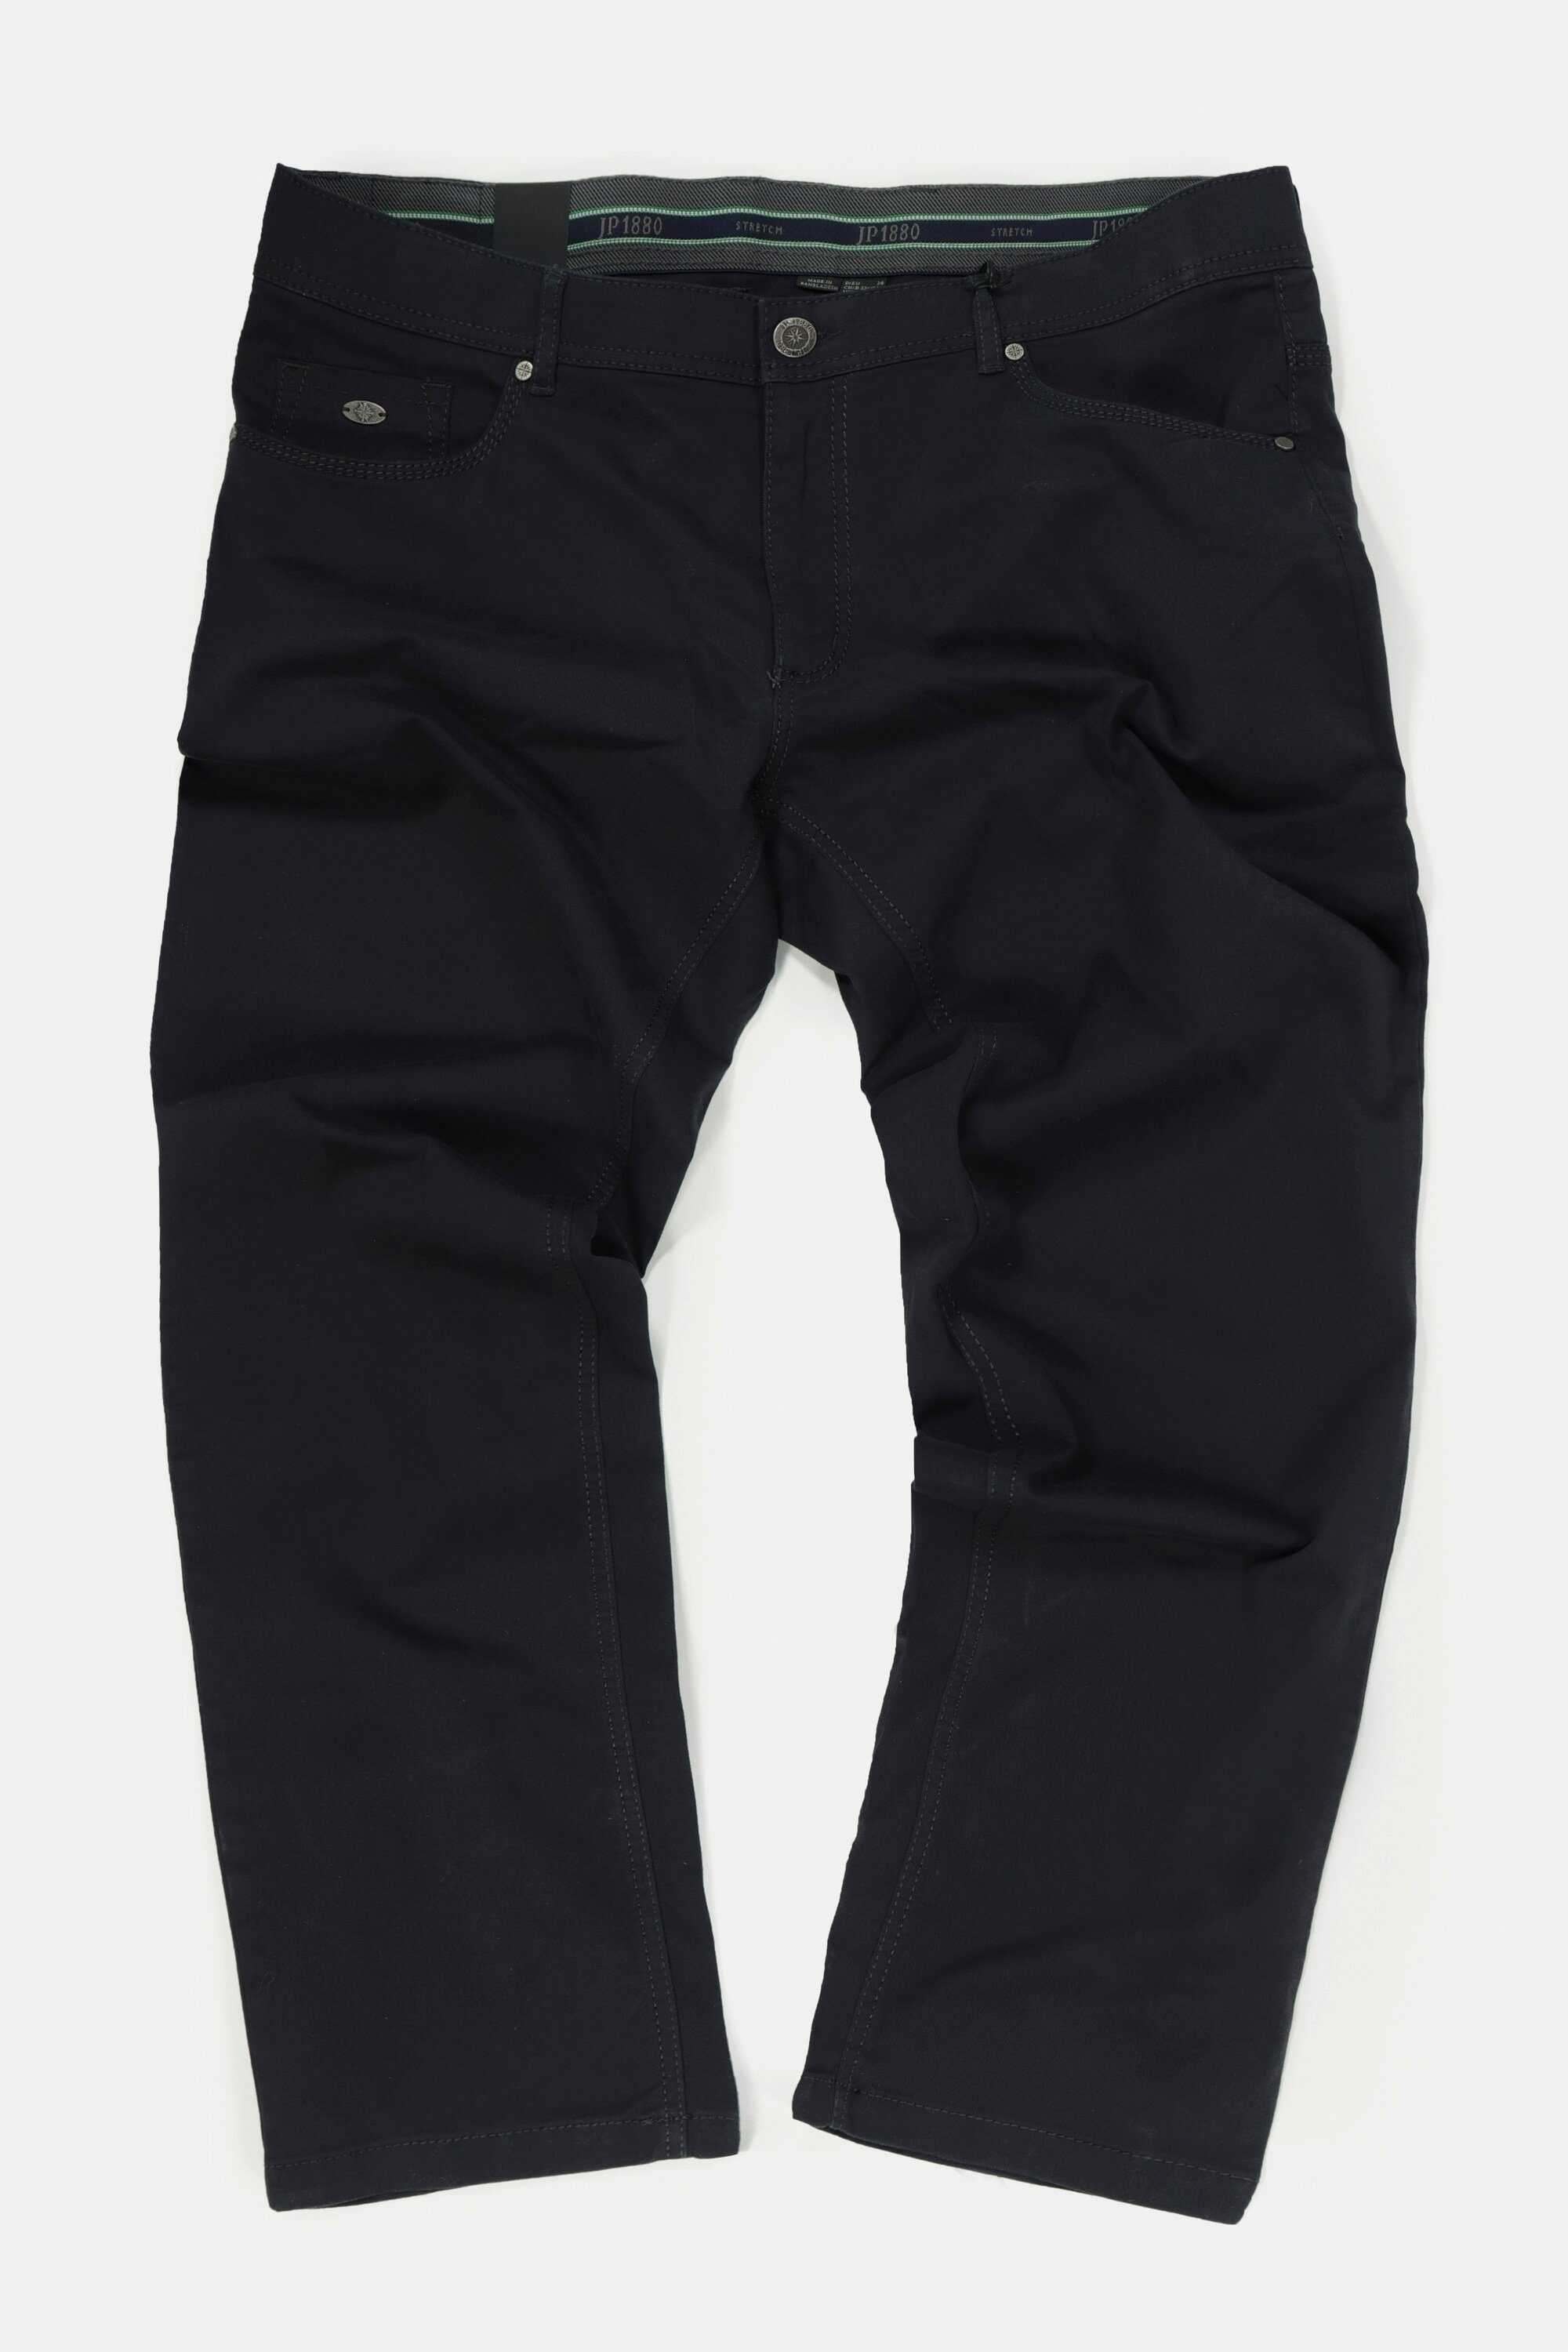 Bund Regular dunkel 5-Pocket-Jeans JP1880 5-Pocket Hose marine Fit elastischer